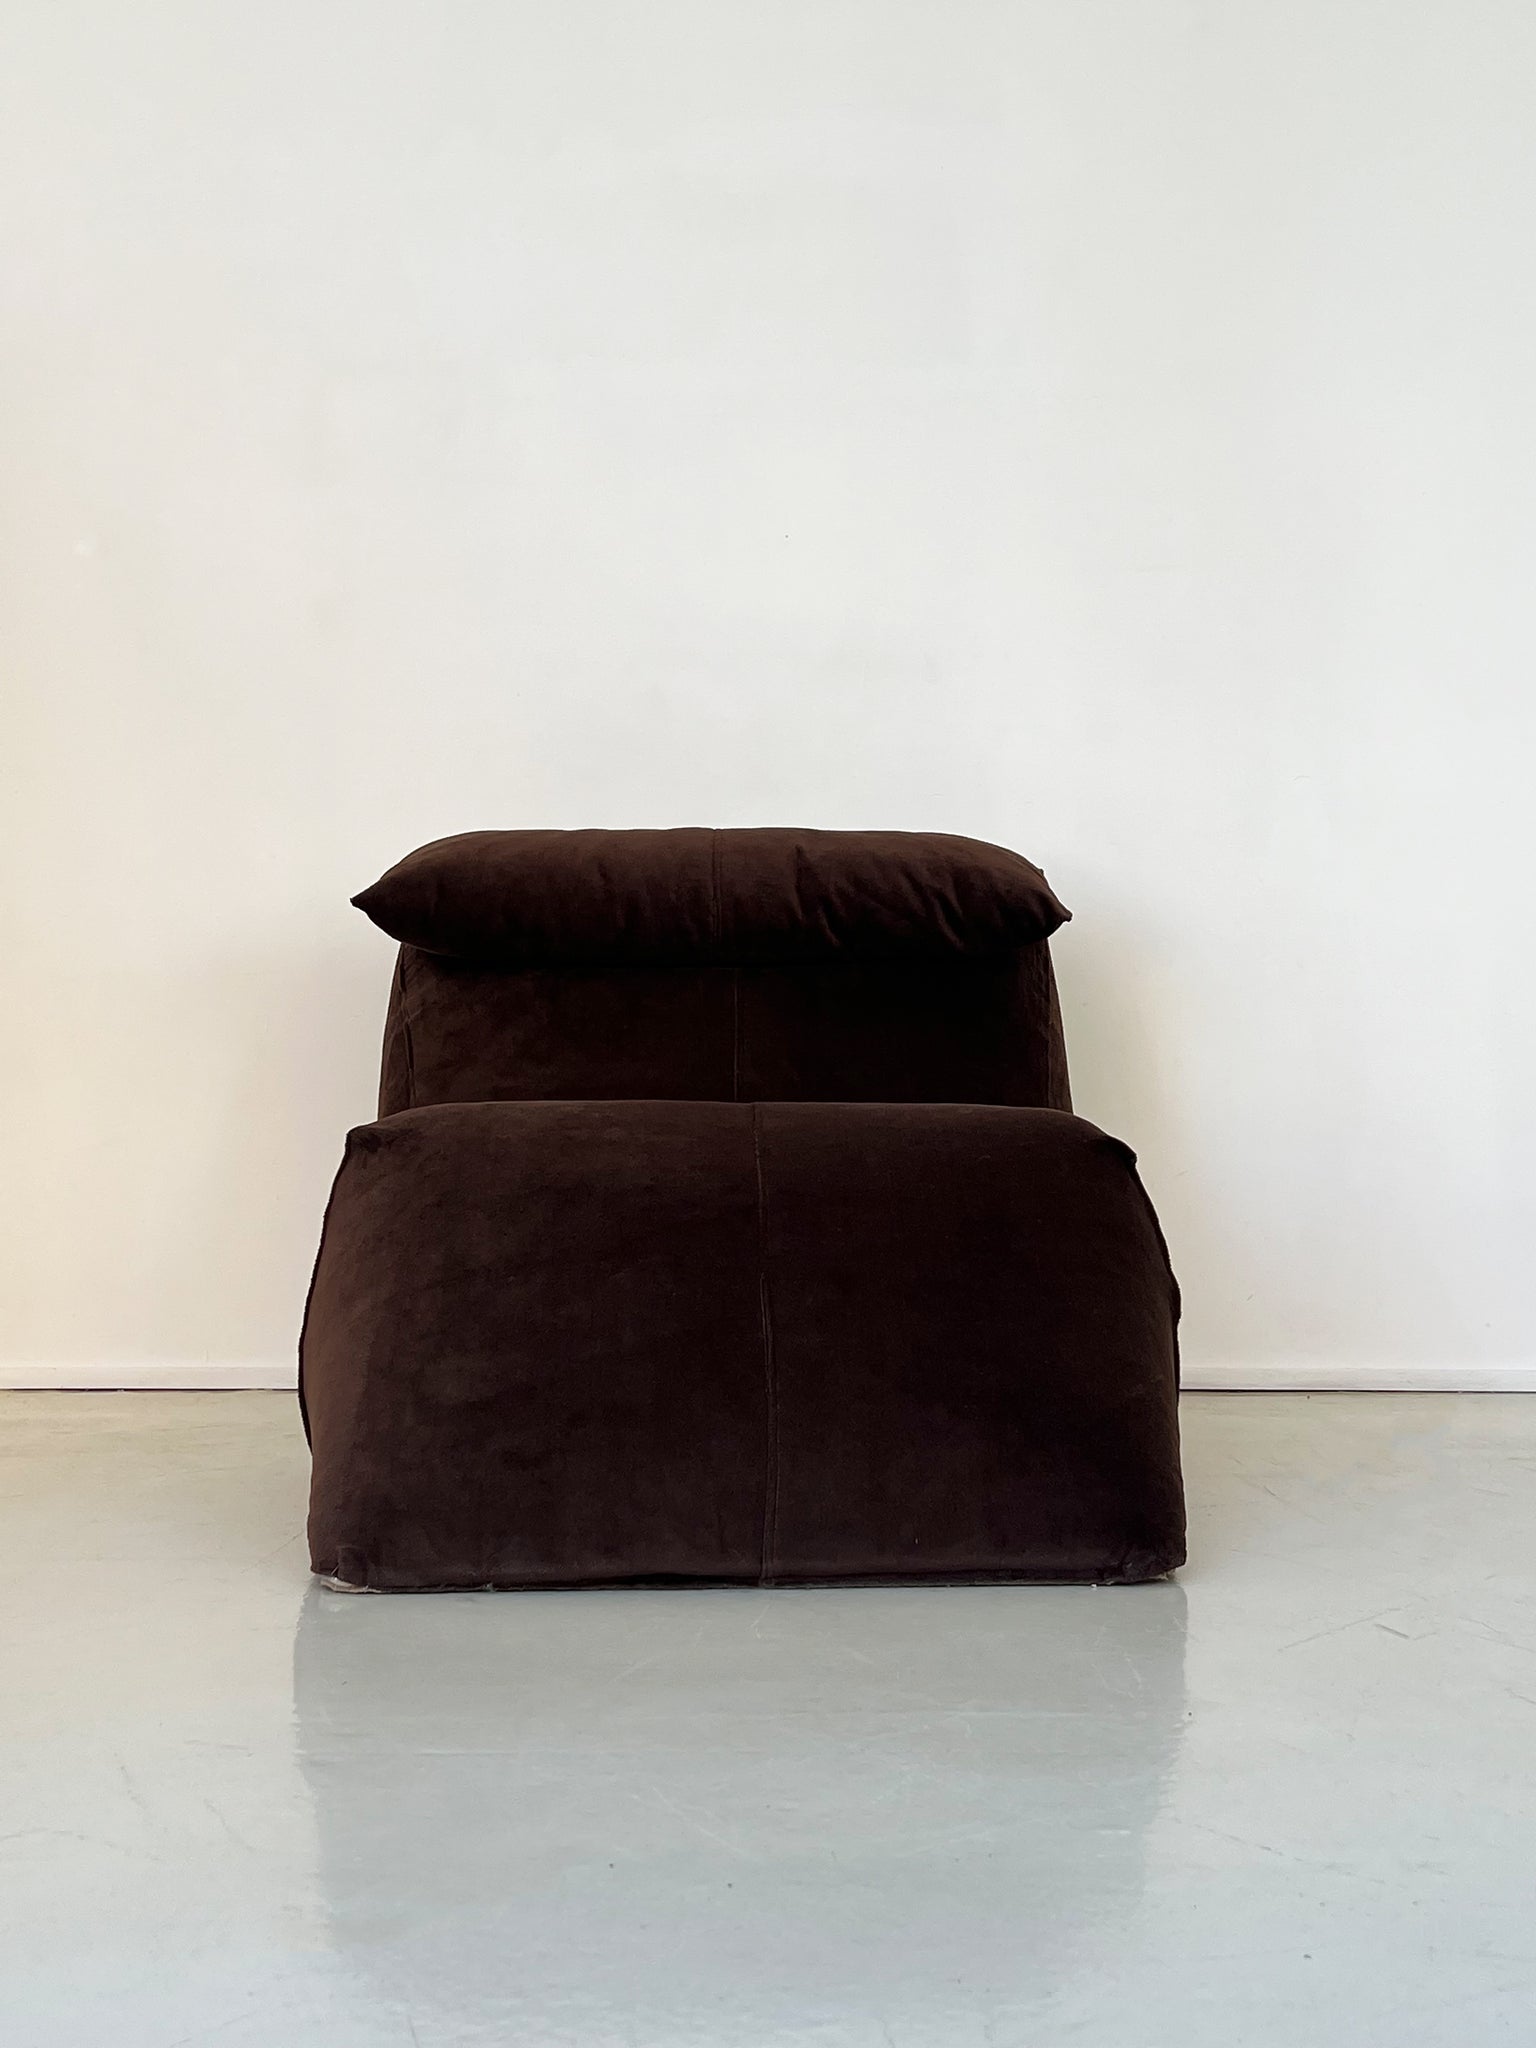 1970s Brown Mario Bellini Le Bambole Lounge Chair